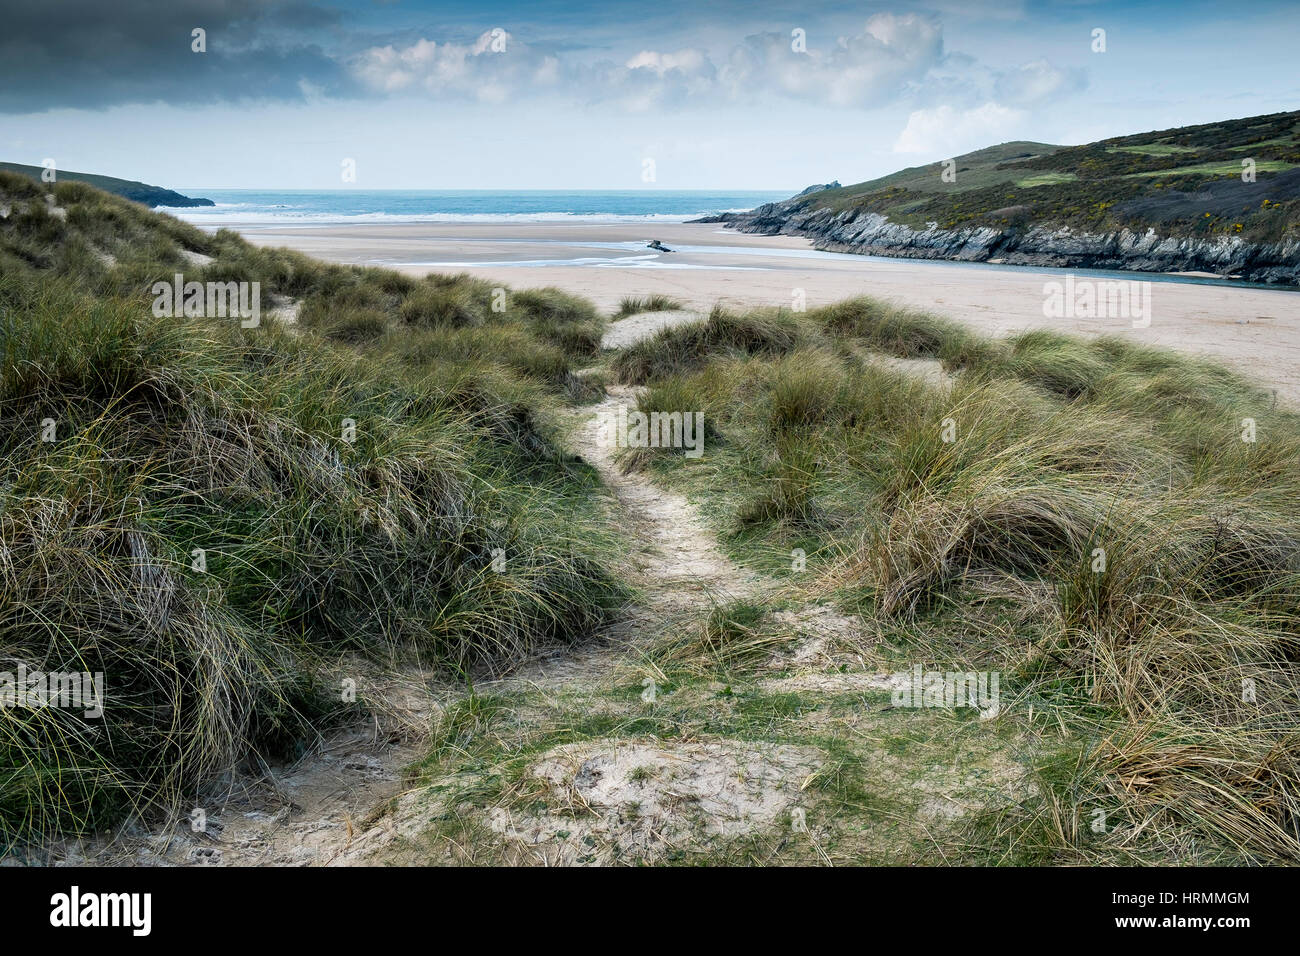 Le dune di sabbia di erba marram crantock beach gannel estuary newquay cornwall Inghilterra Regno Unito Foto Stock